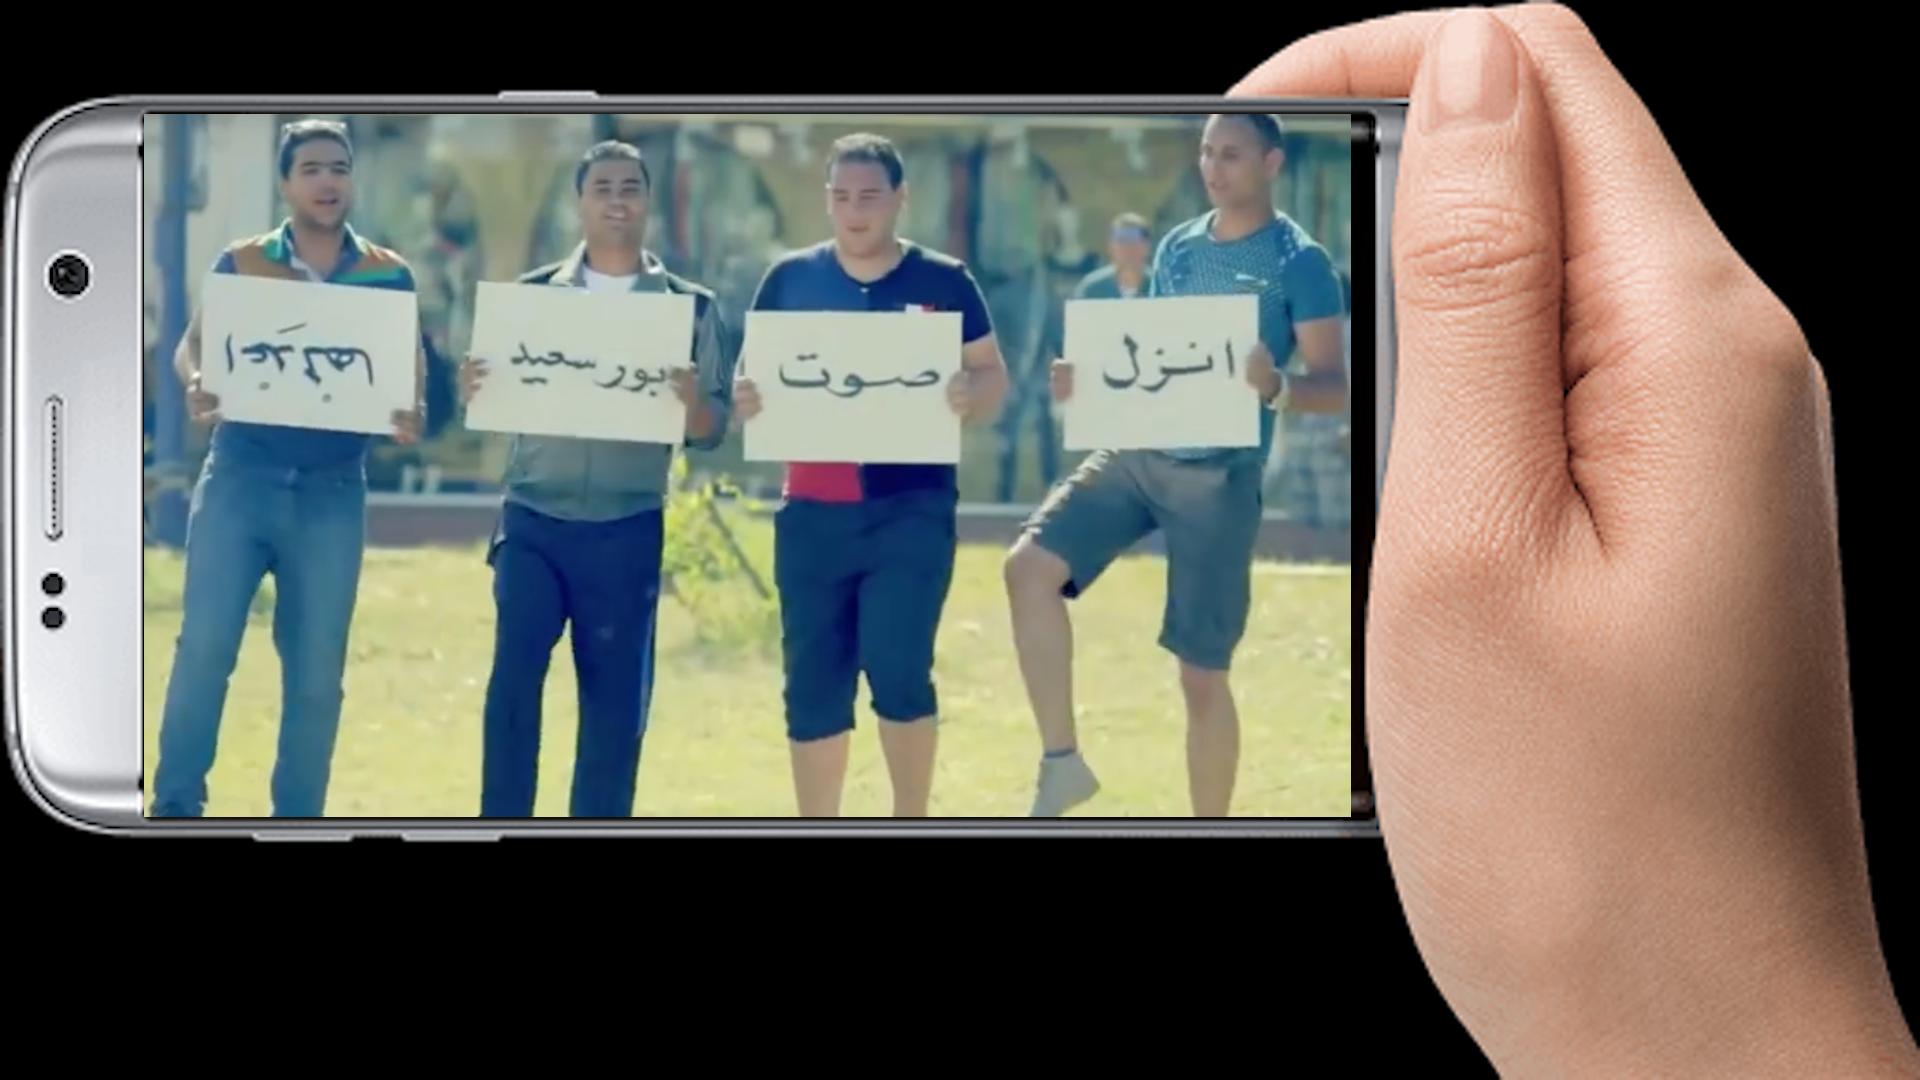 حسين الجسمي بشرة خير بدون انترنت For Android Apk Download